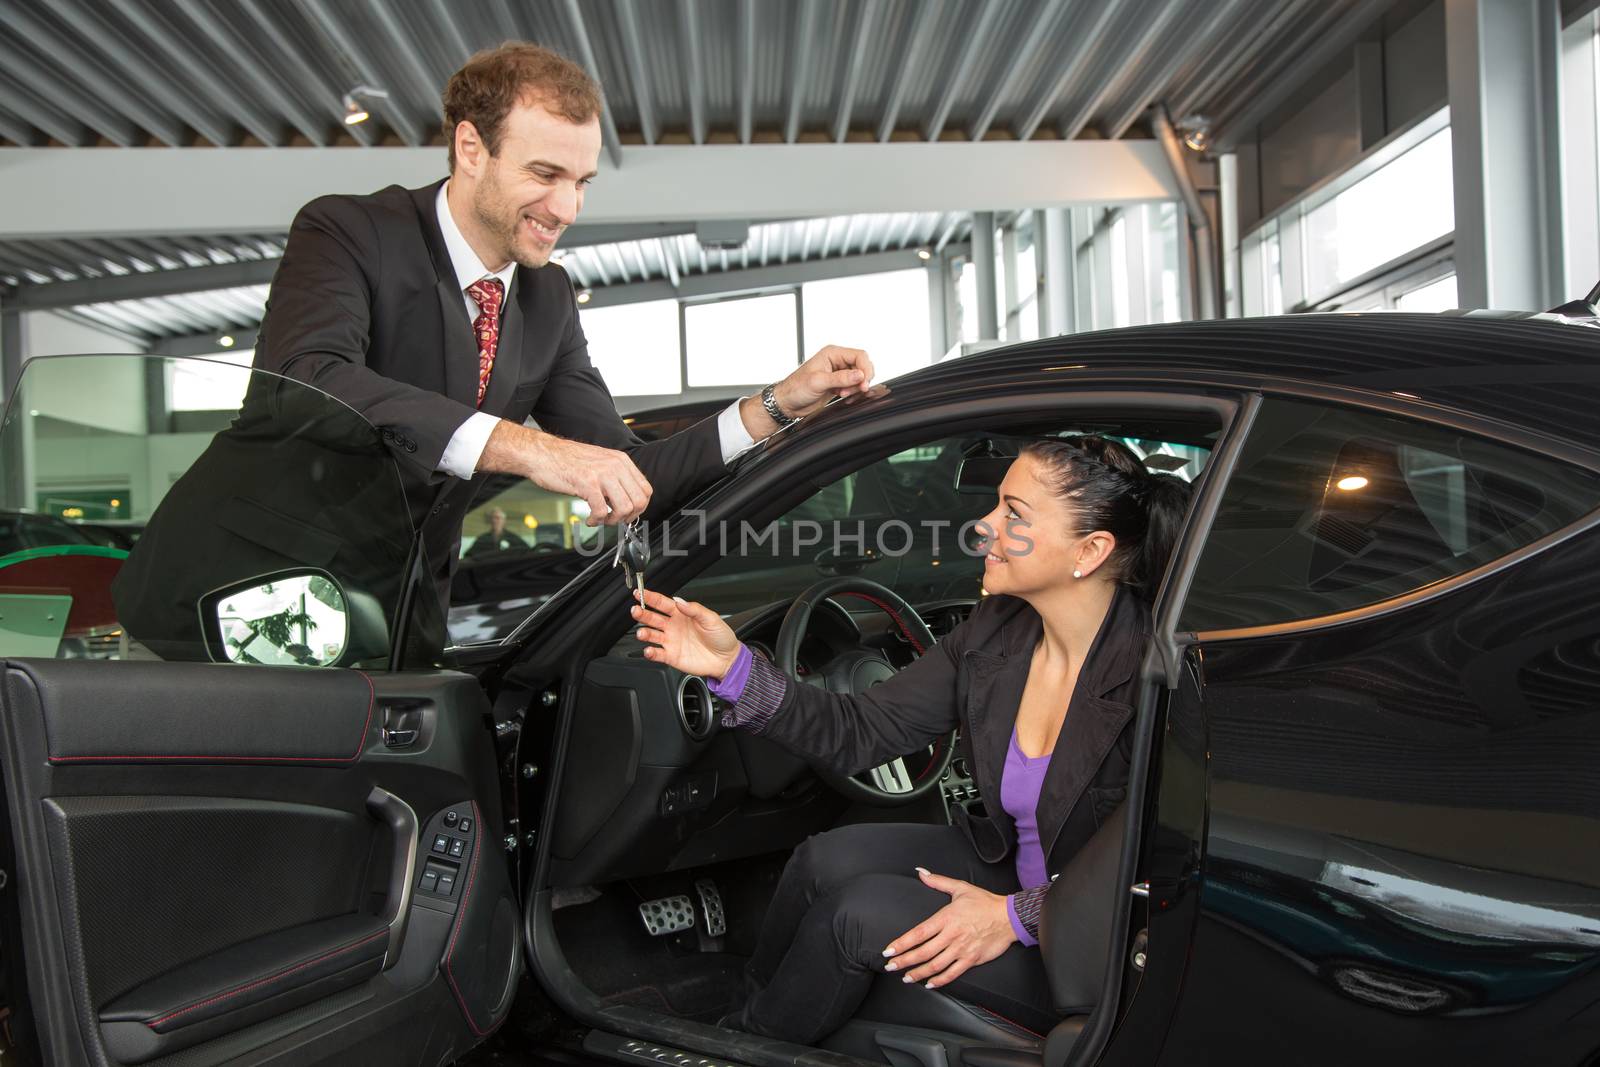 Salesman in car dealership sells automobile to customer by ikonoklast_fotografie